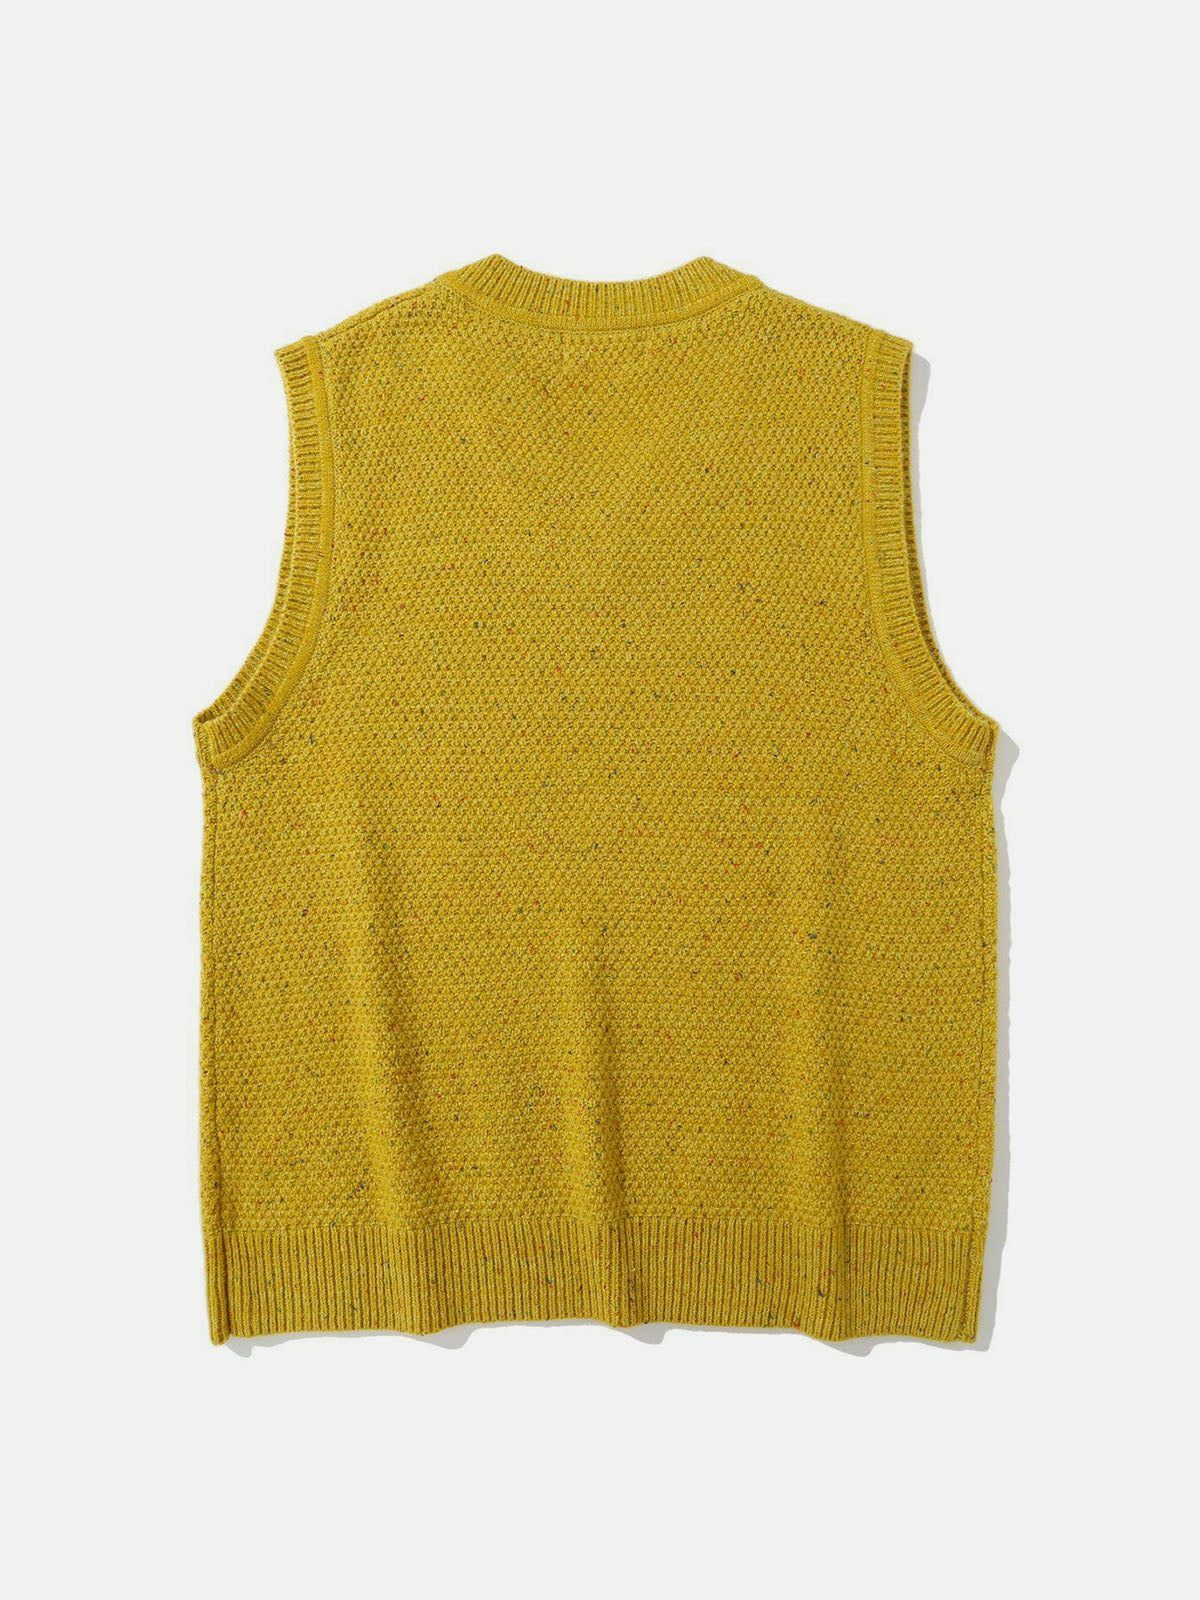 y2k vintage sweater vest edgy streetwear essential 5339